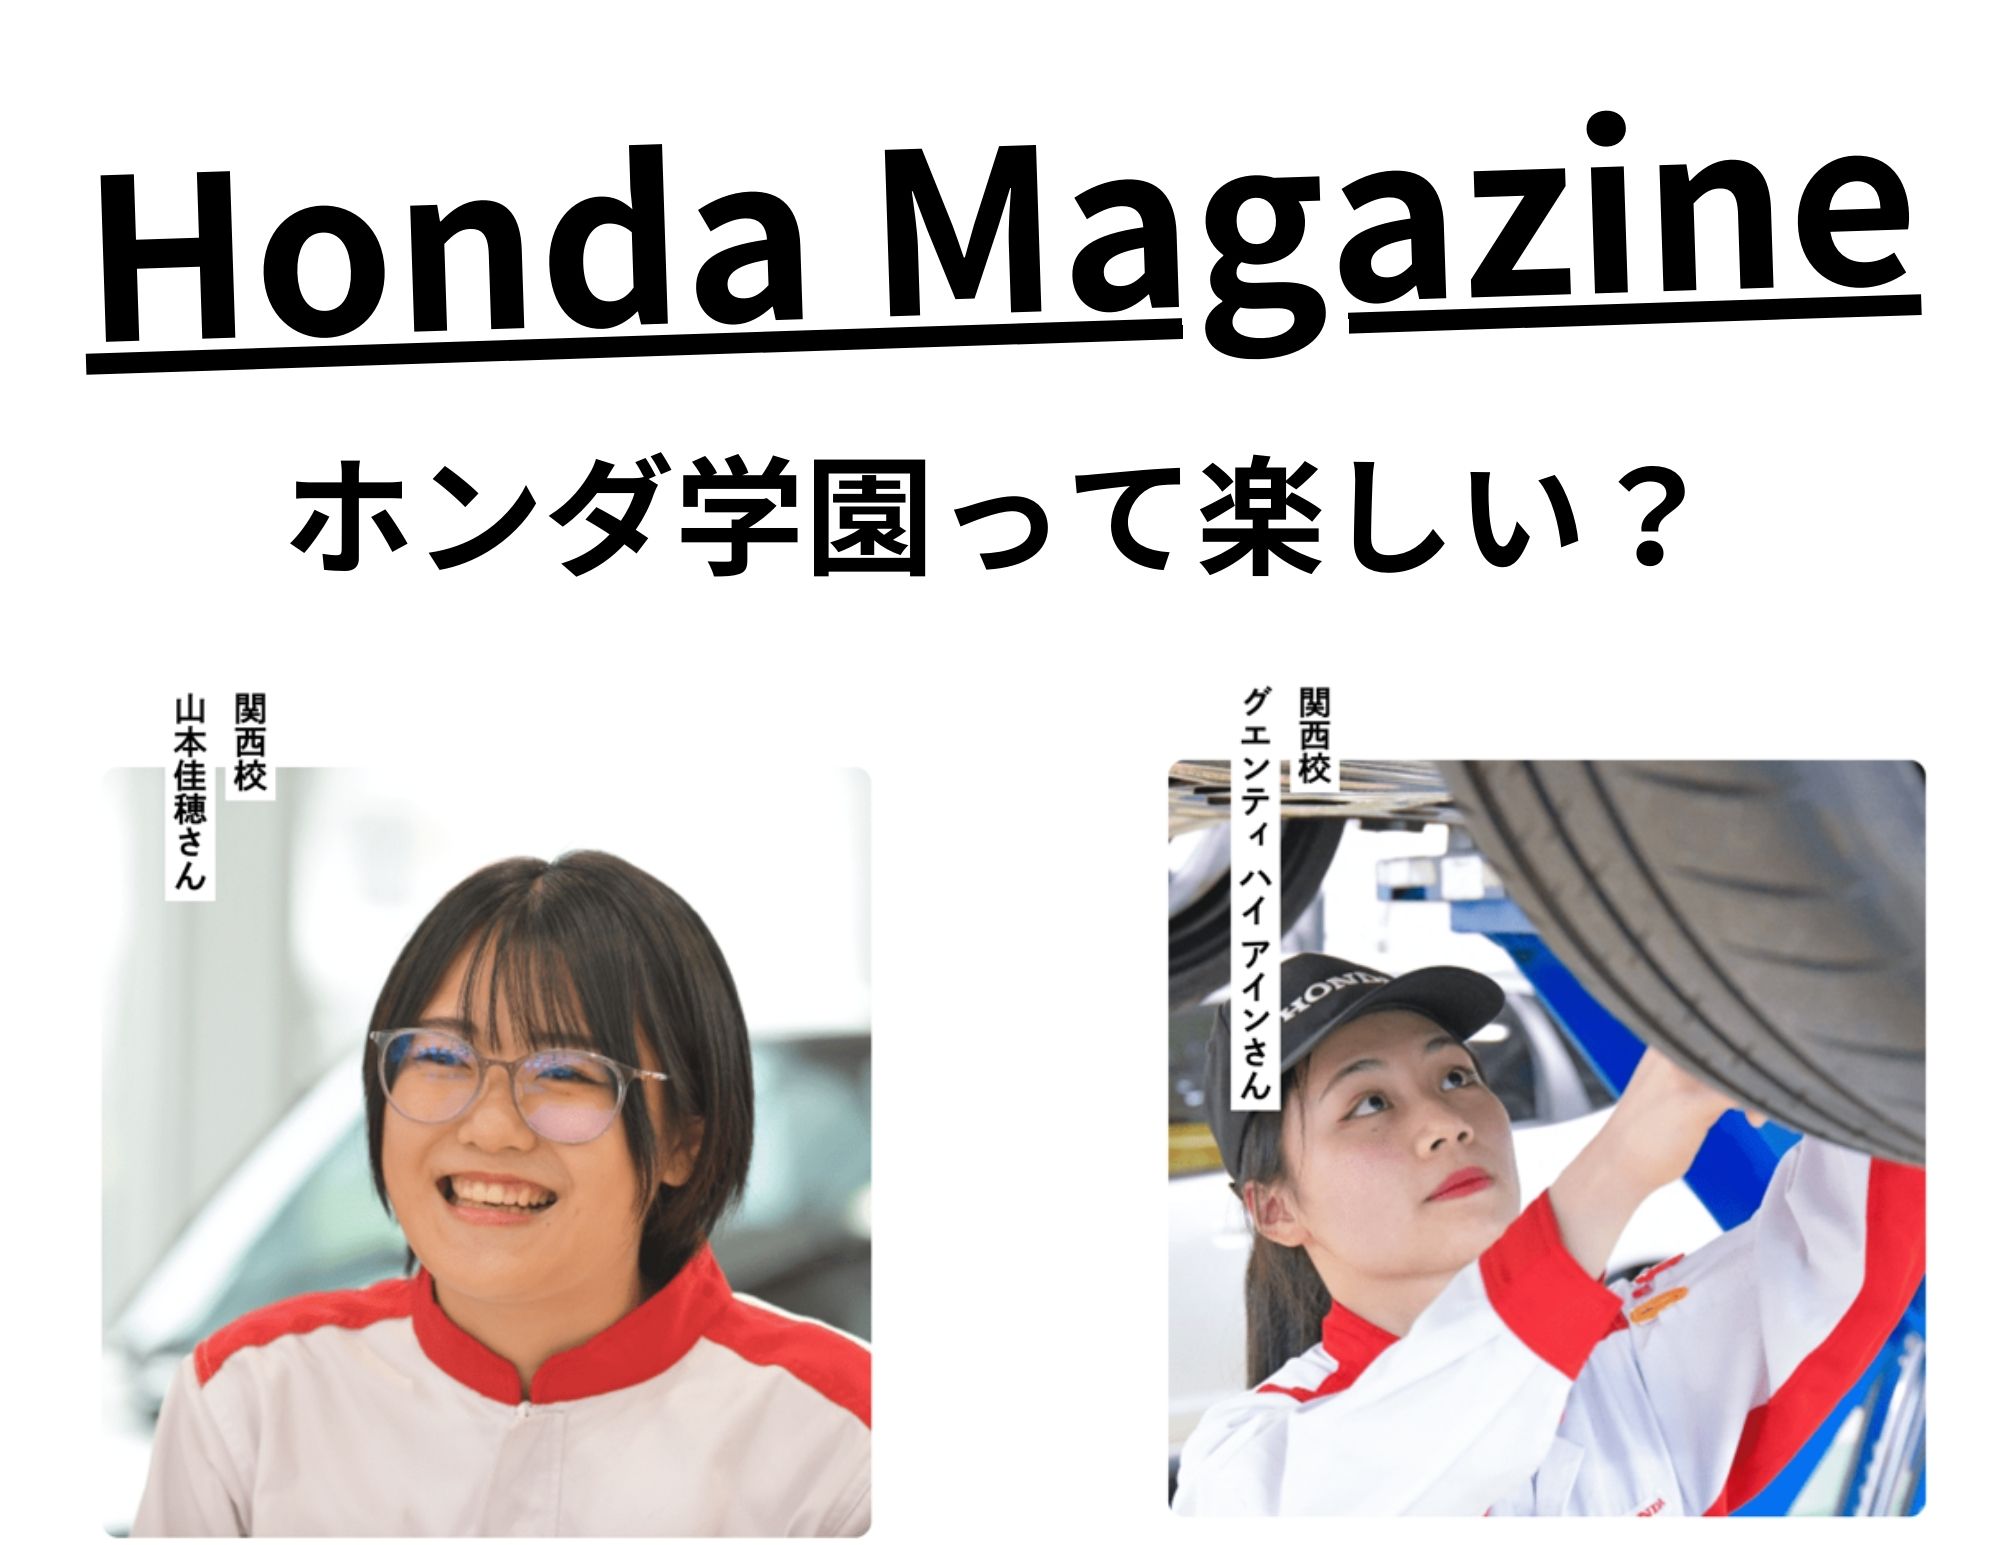 【学園女子☺】Honda Magazineのピックアップコラムに掲載！「ホンダ学園って楽しい？」